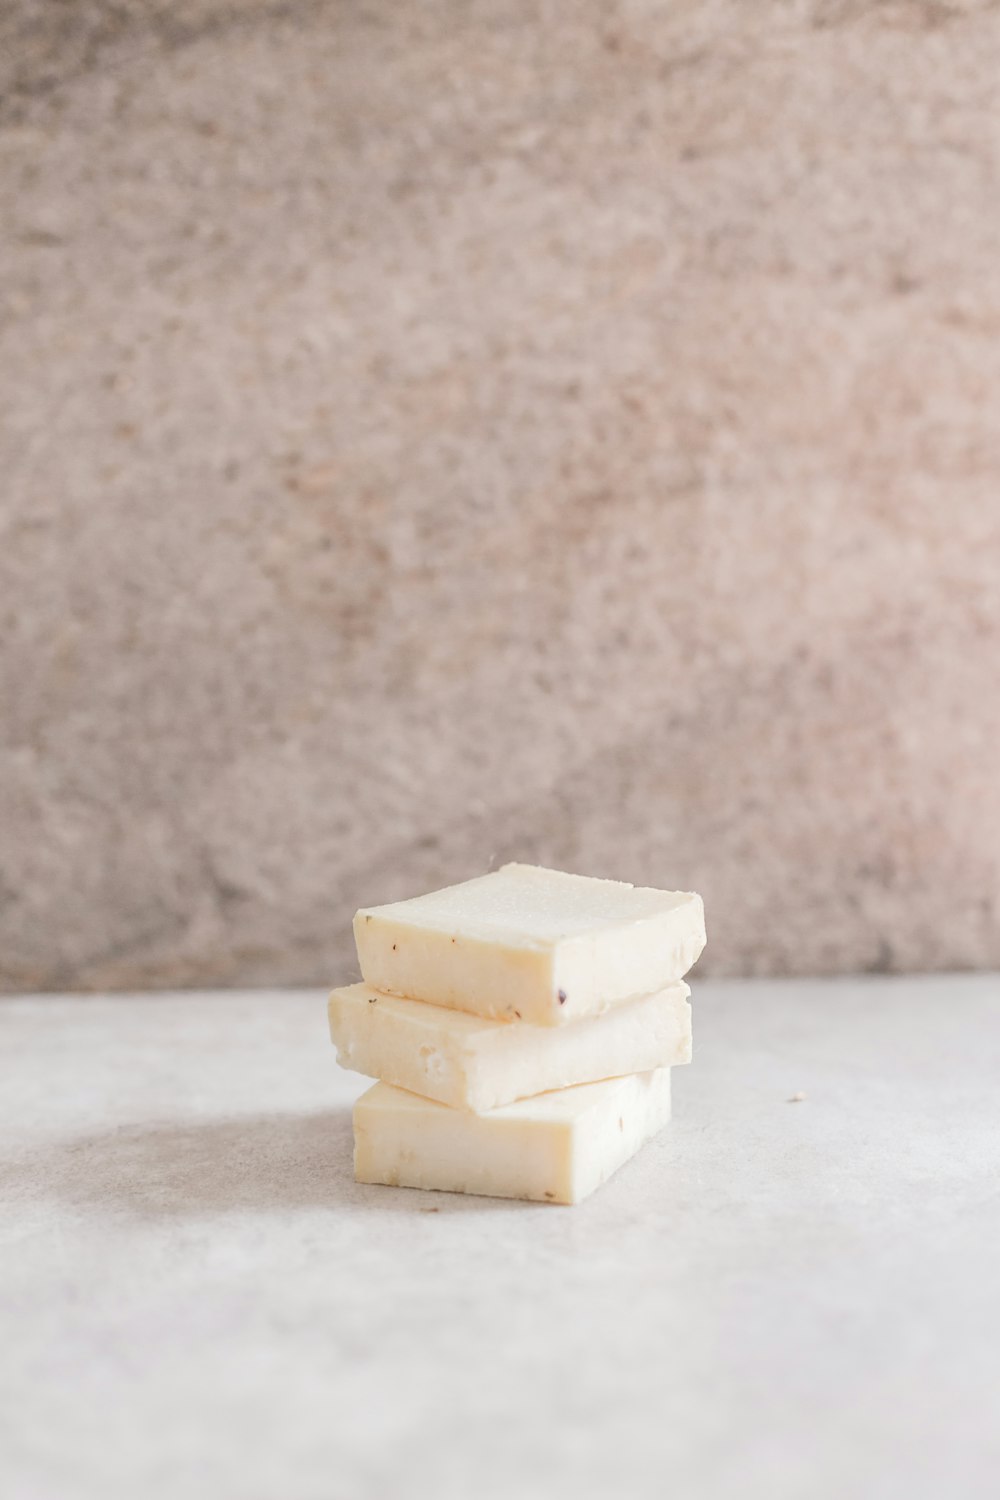 white cheese on white table